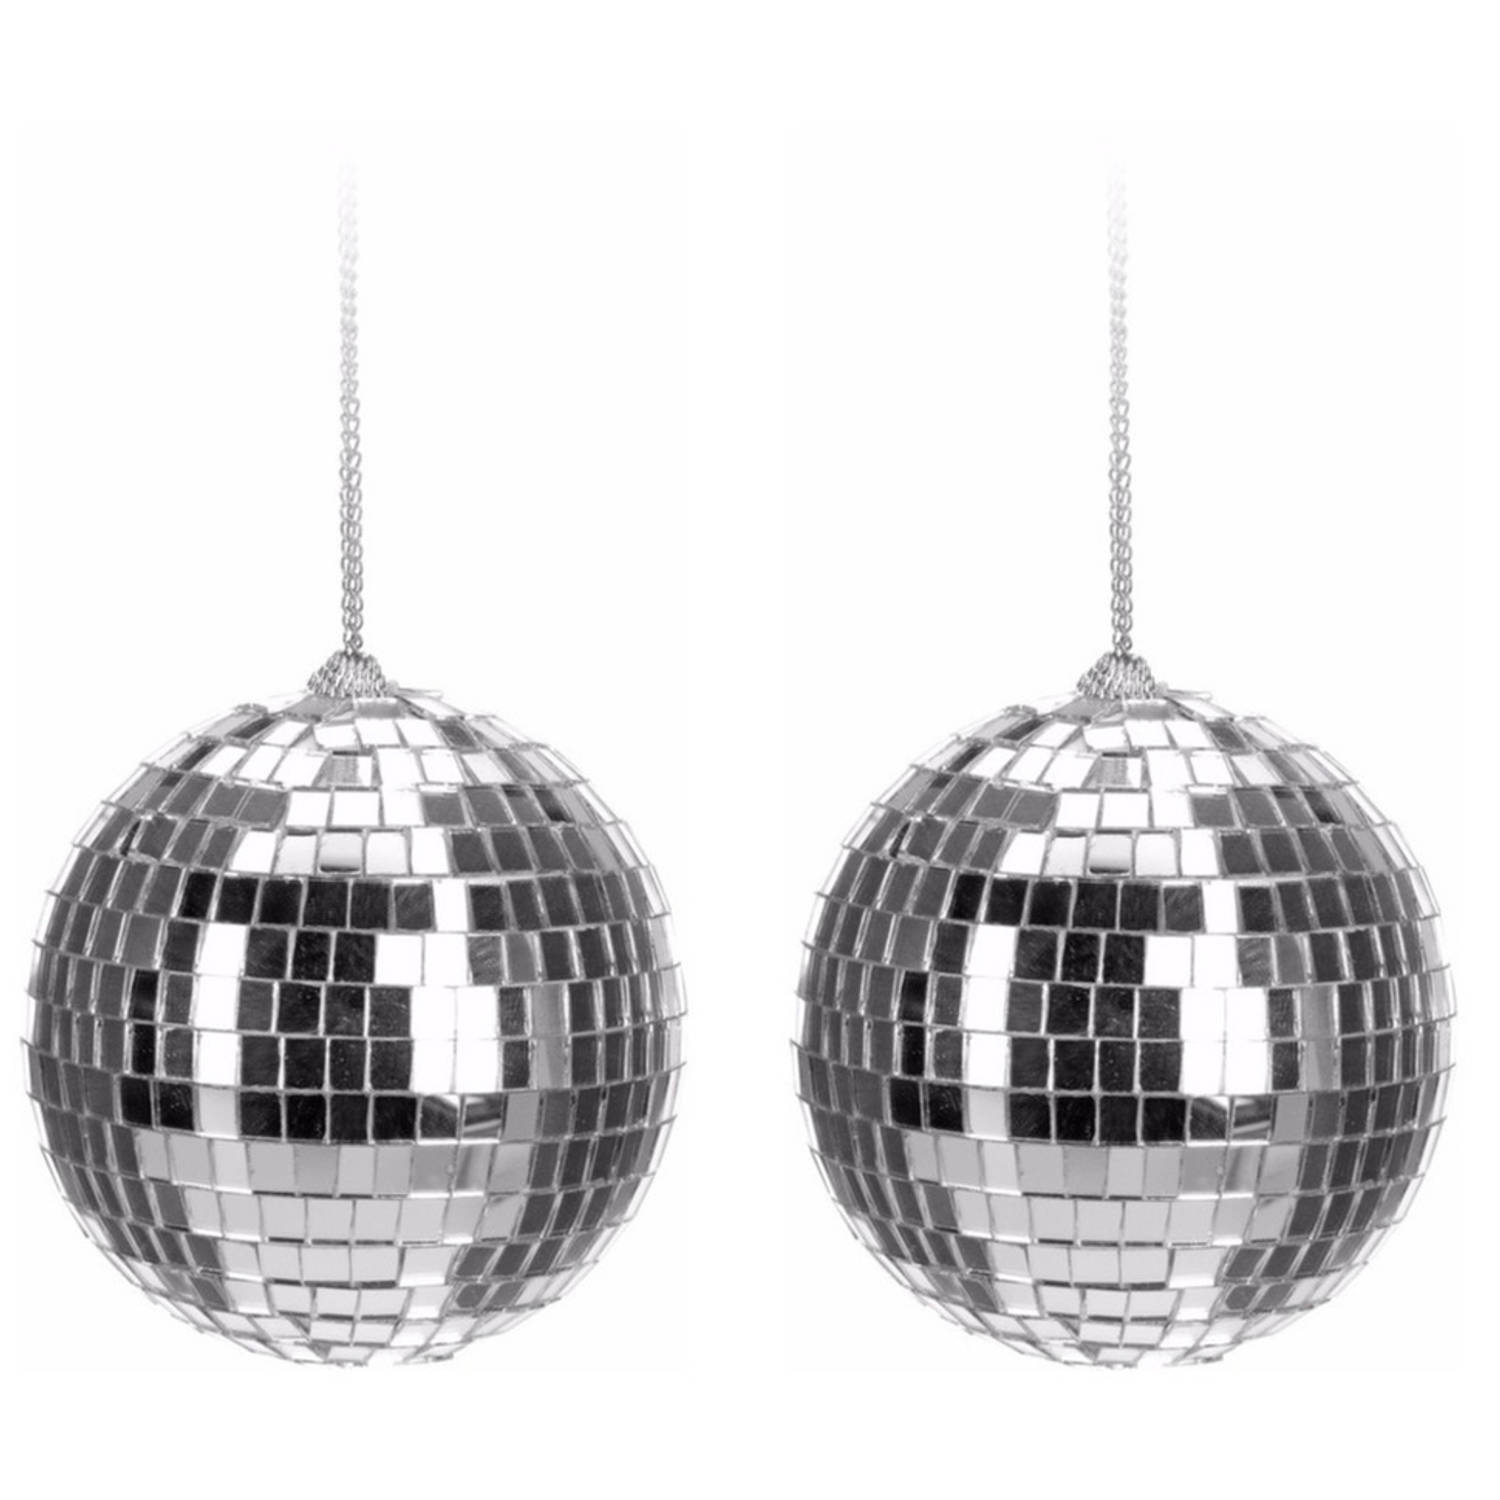 15x Zilveren Discoballen-discobollen Kerstballen 6 Cm Kerstbal